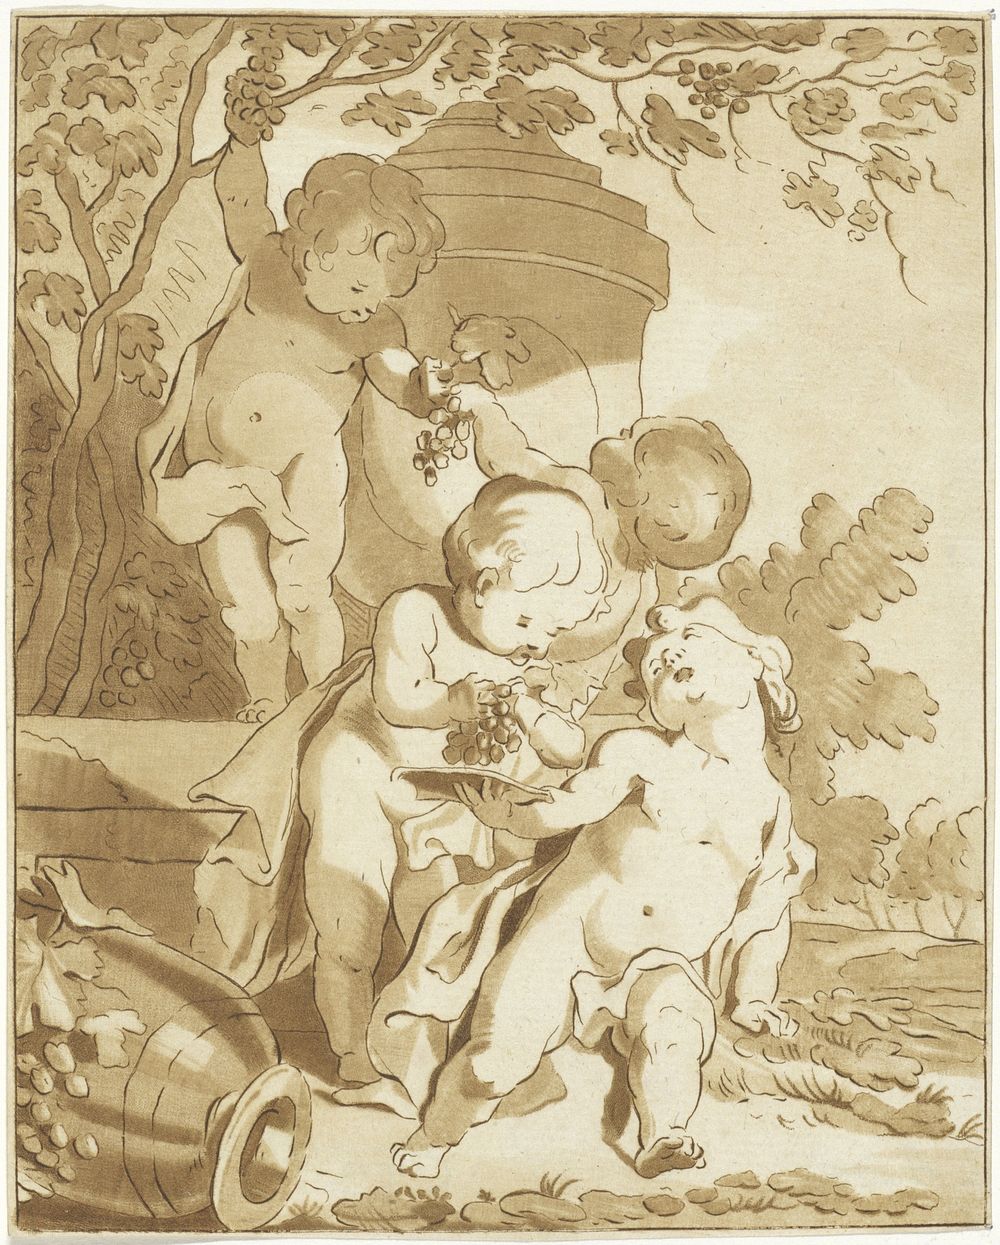 Vier druiven plukkende putti bij een vaas (1767 - 1780) by Bernhard Schreuder and Jacob de Wit